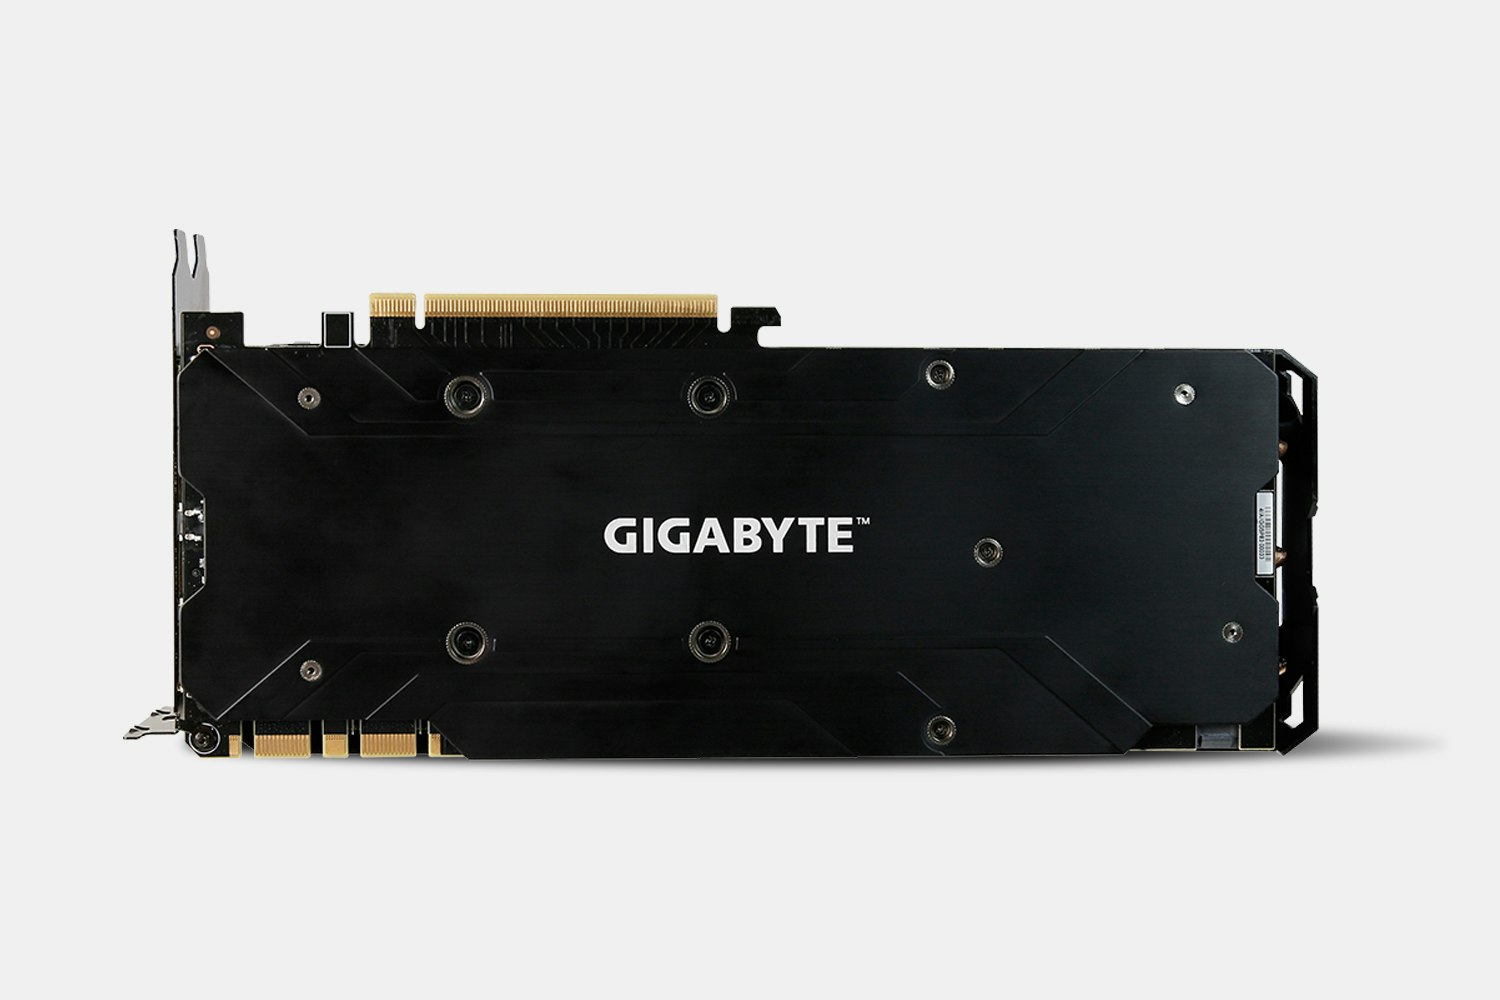 Gigabyte GeForce GTX 1080 WINDFORCE 8G 